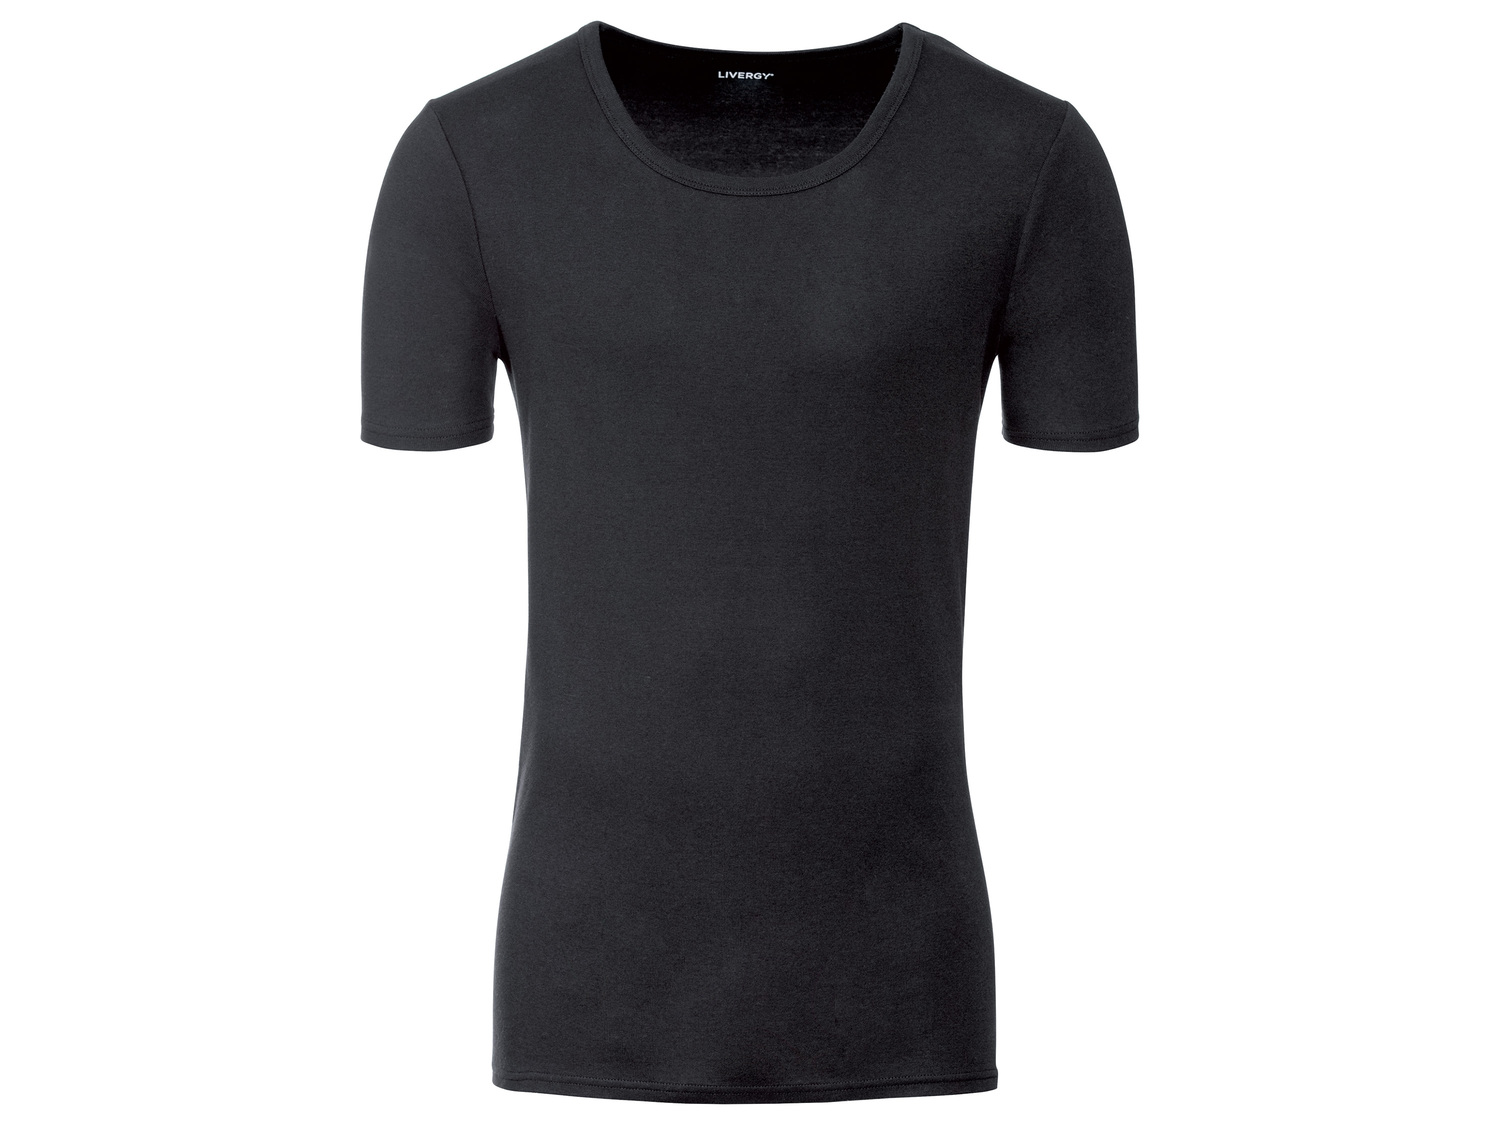 T-shirts homme Livergy, le prix 9.99 € 
- Ex. 100 % coton
- Du S au XL selon ...